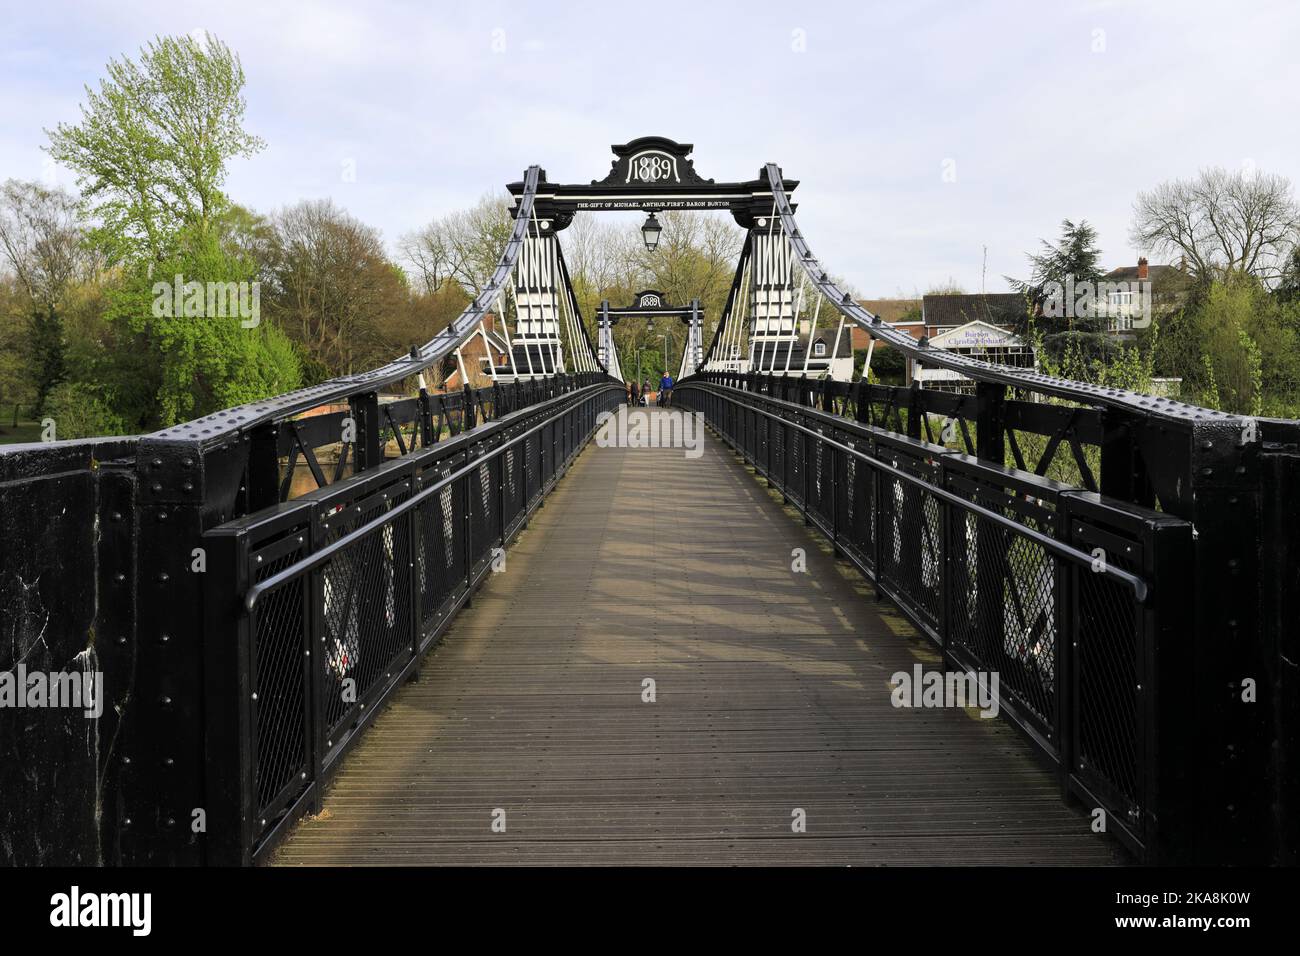 Le pont du Ferry au-dessus de la rivière Trent, Burton upon Trent Town, Staffordshire, Angleterre; Royaume-Uni Banque D'Images